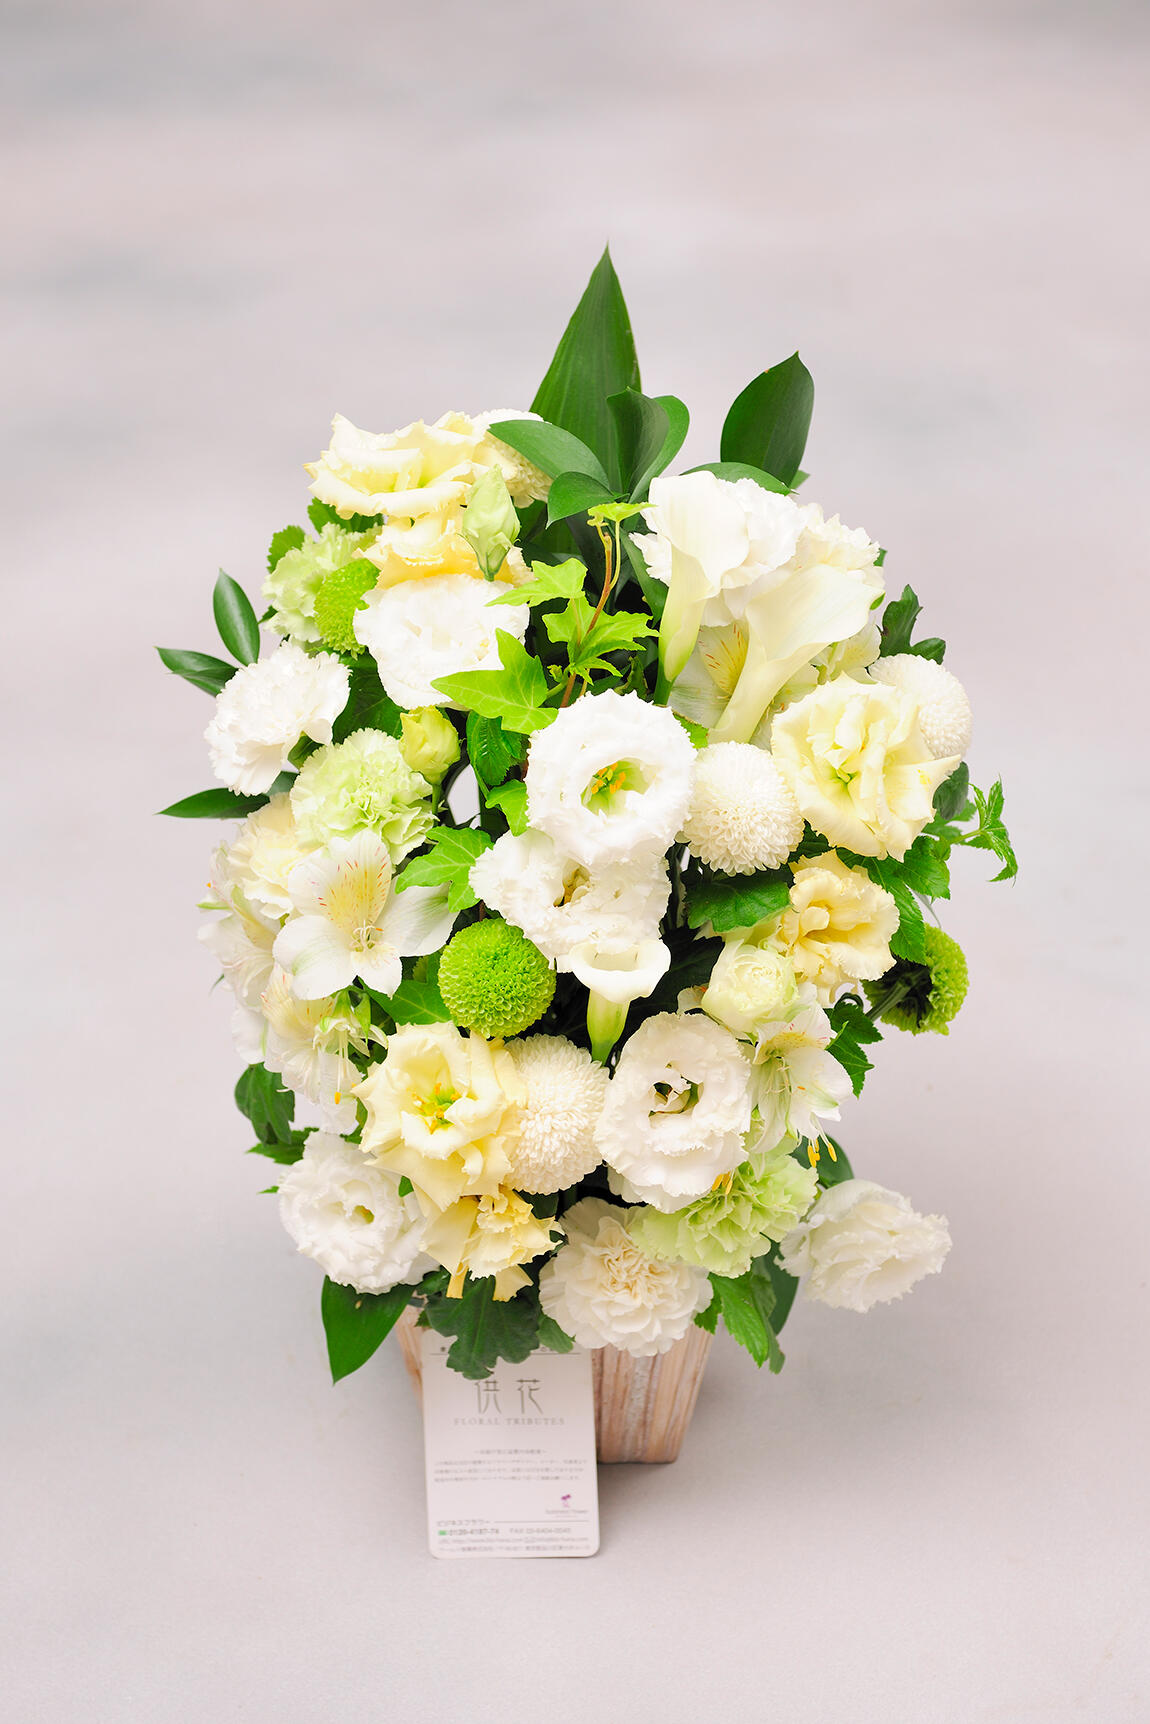 <p>ポンポン菊などを使用し、一般的な葬儀用のお花に比べ少し明るい配色やお仕立てにしているのが特徴です。</p>